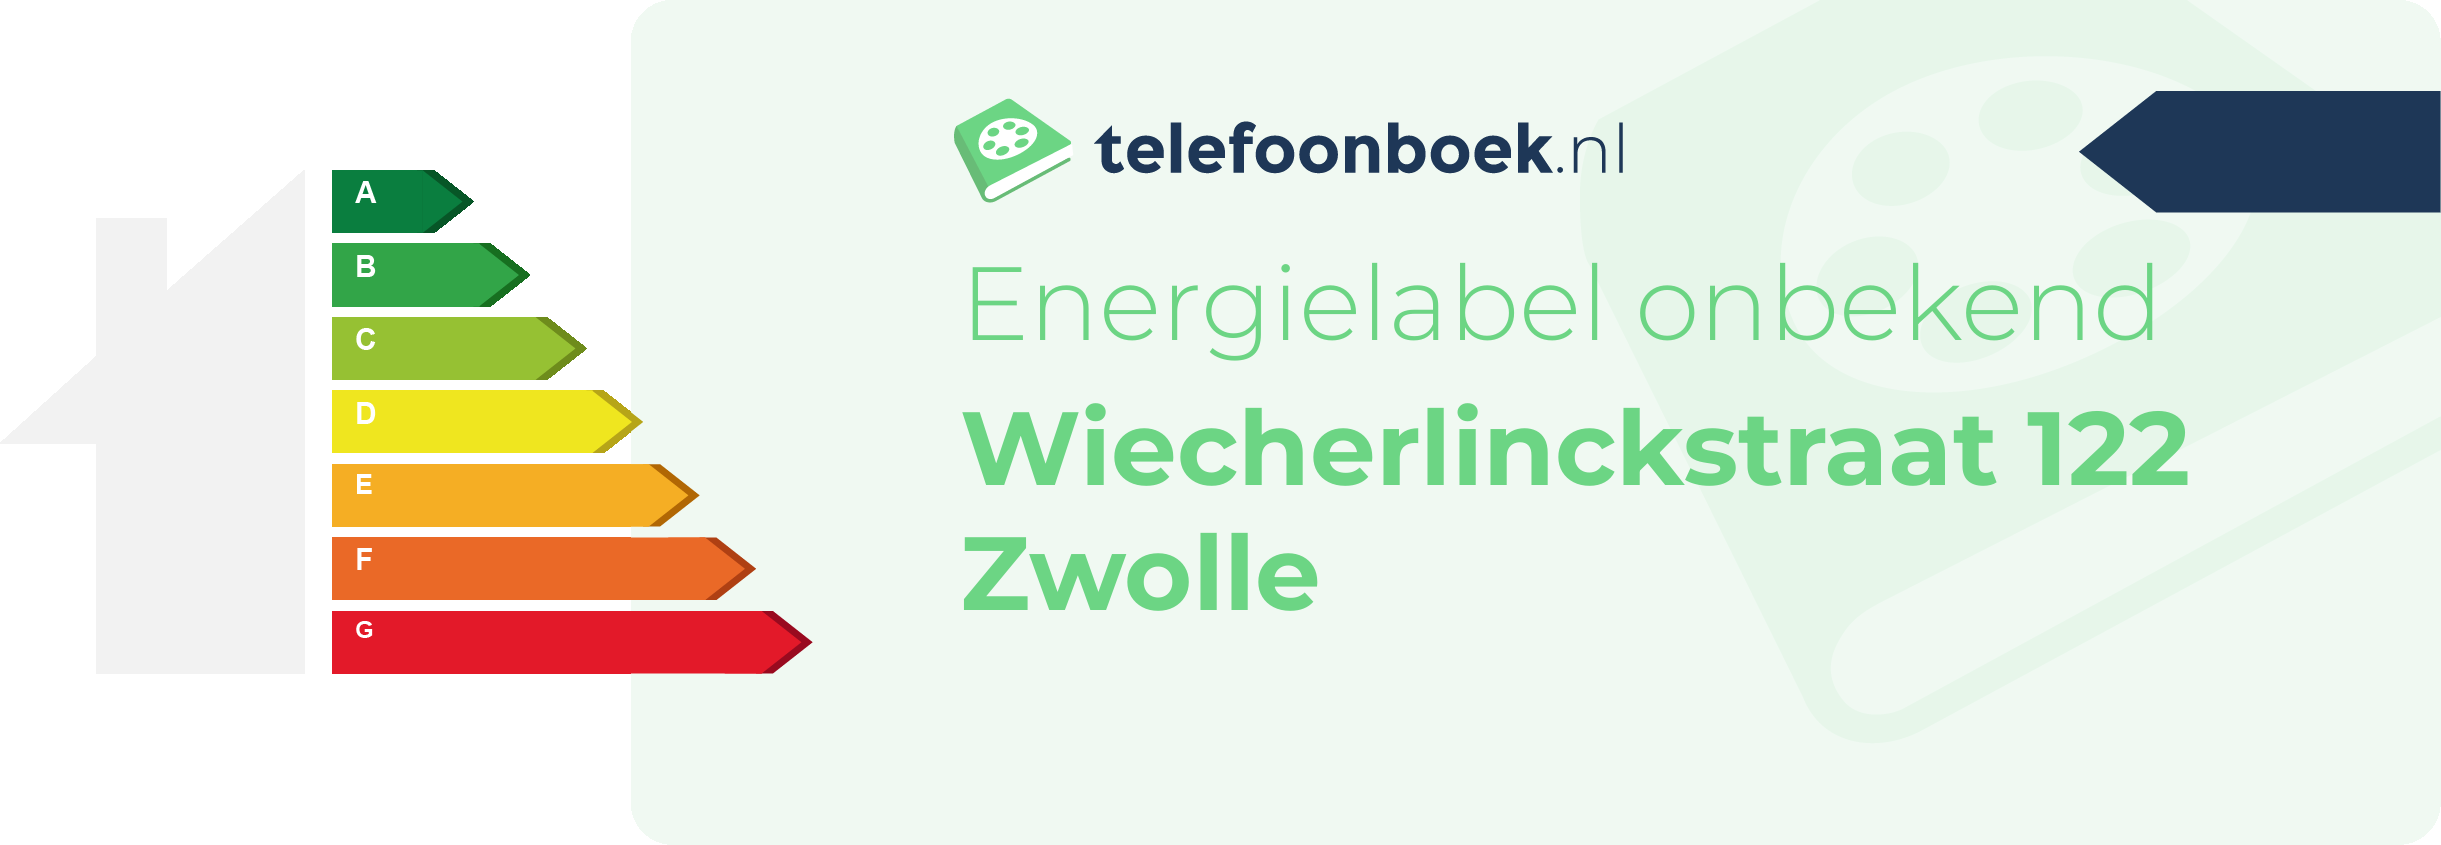 Energielabel Wiecherlinckstraat 122 Zwolle